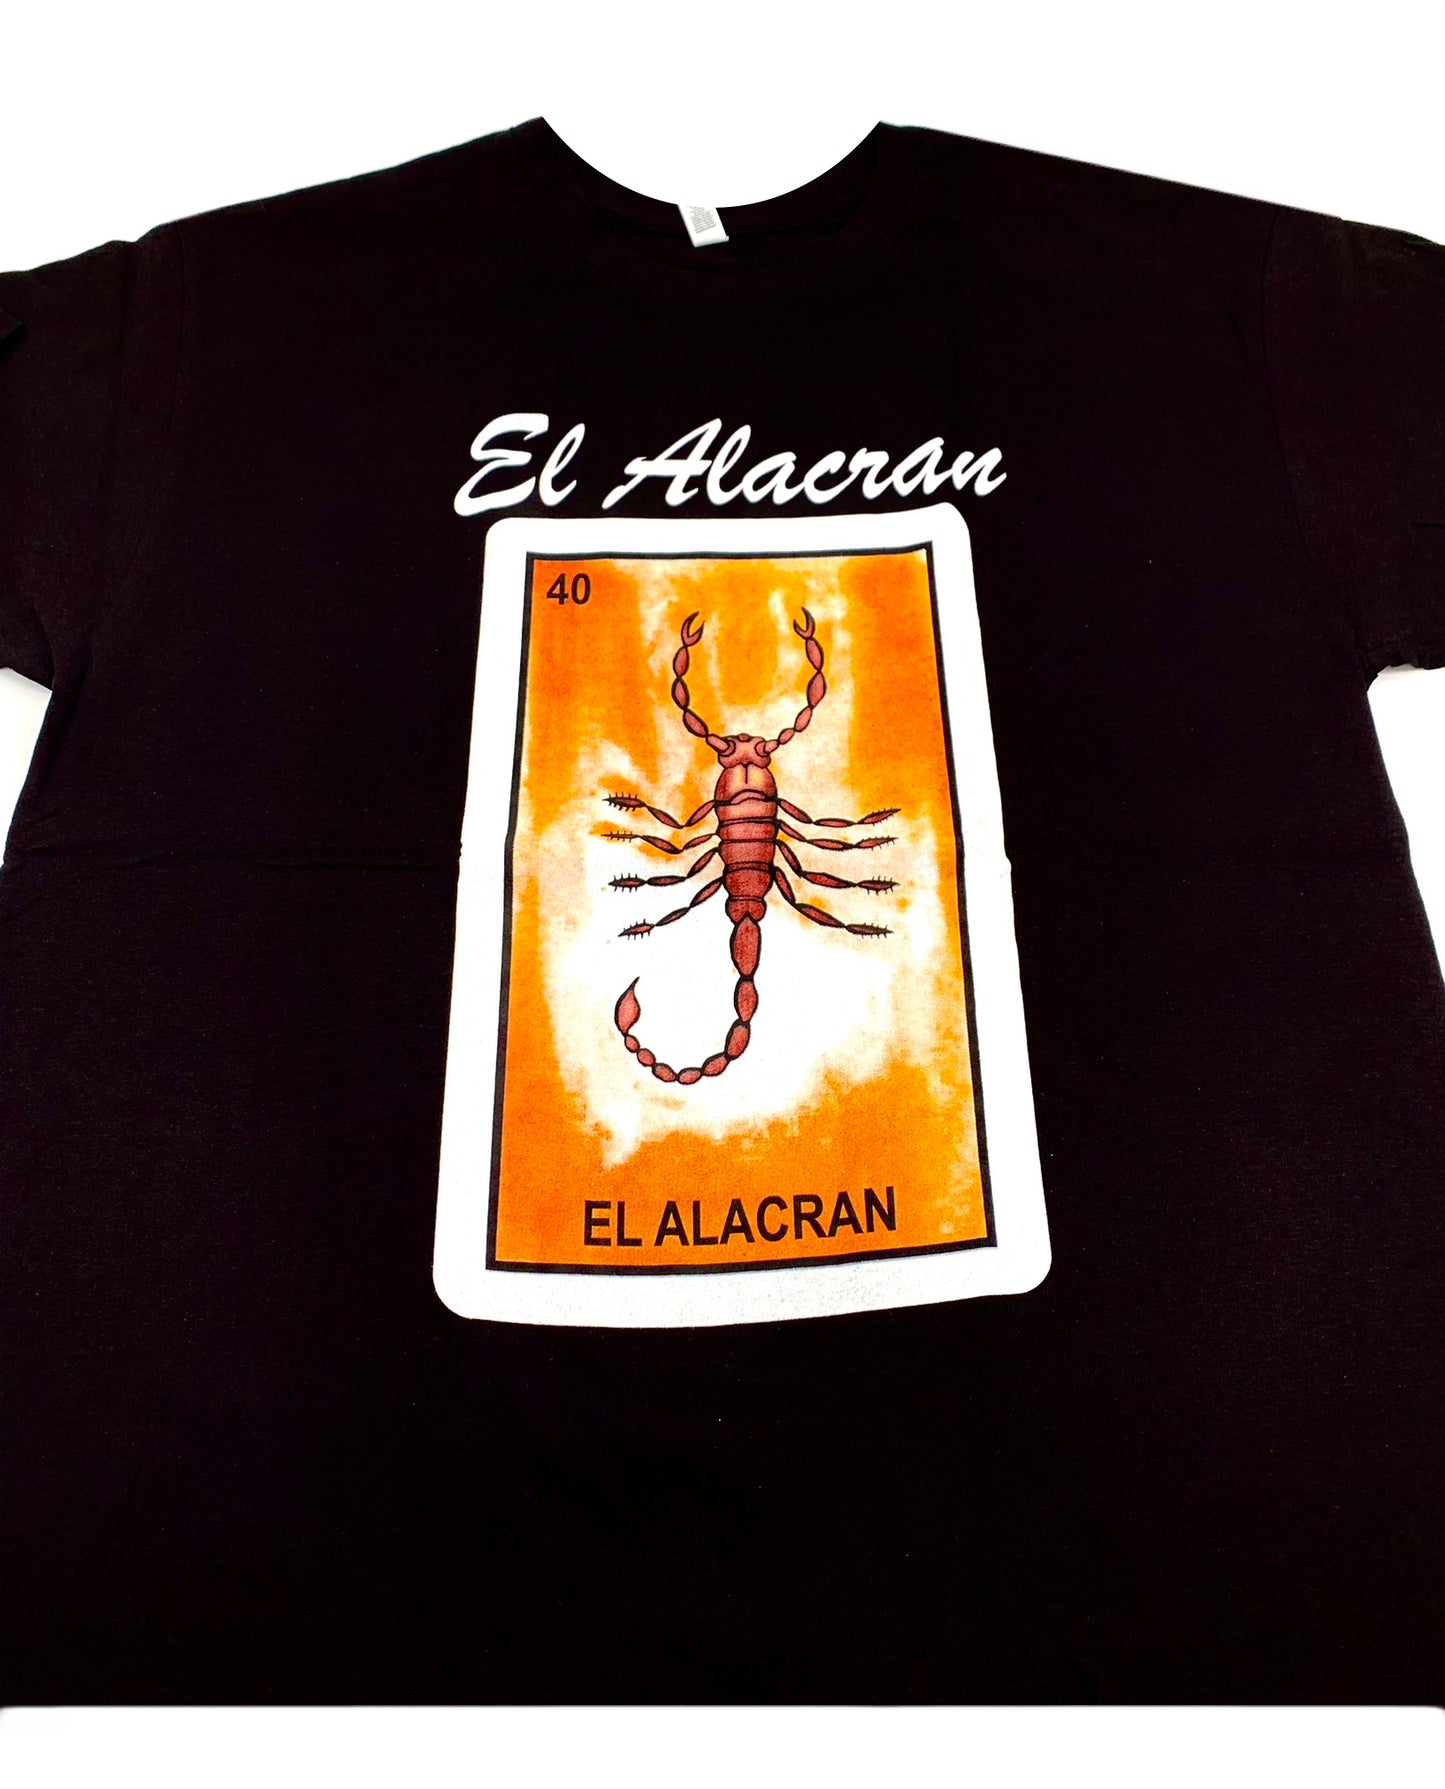 (12ct) El Alacran T-shirts $6.99 EA